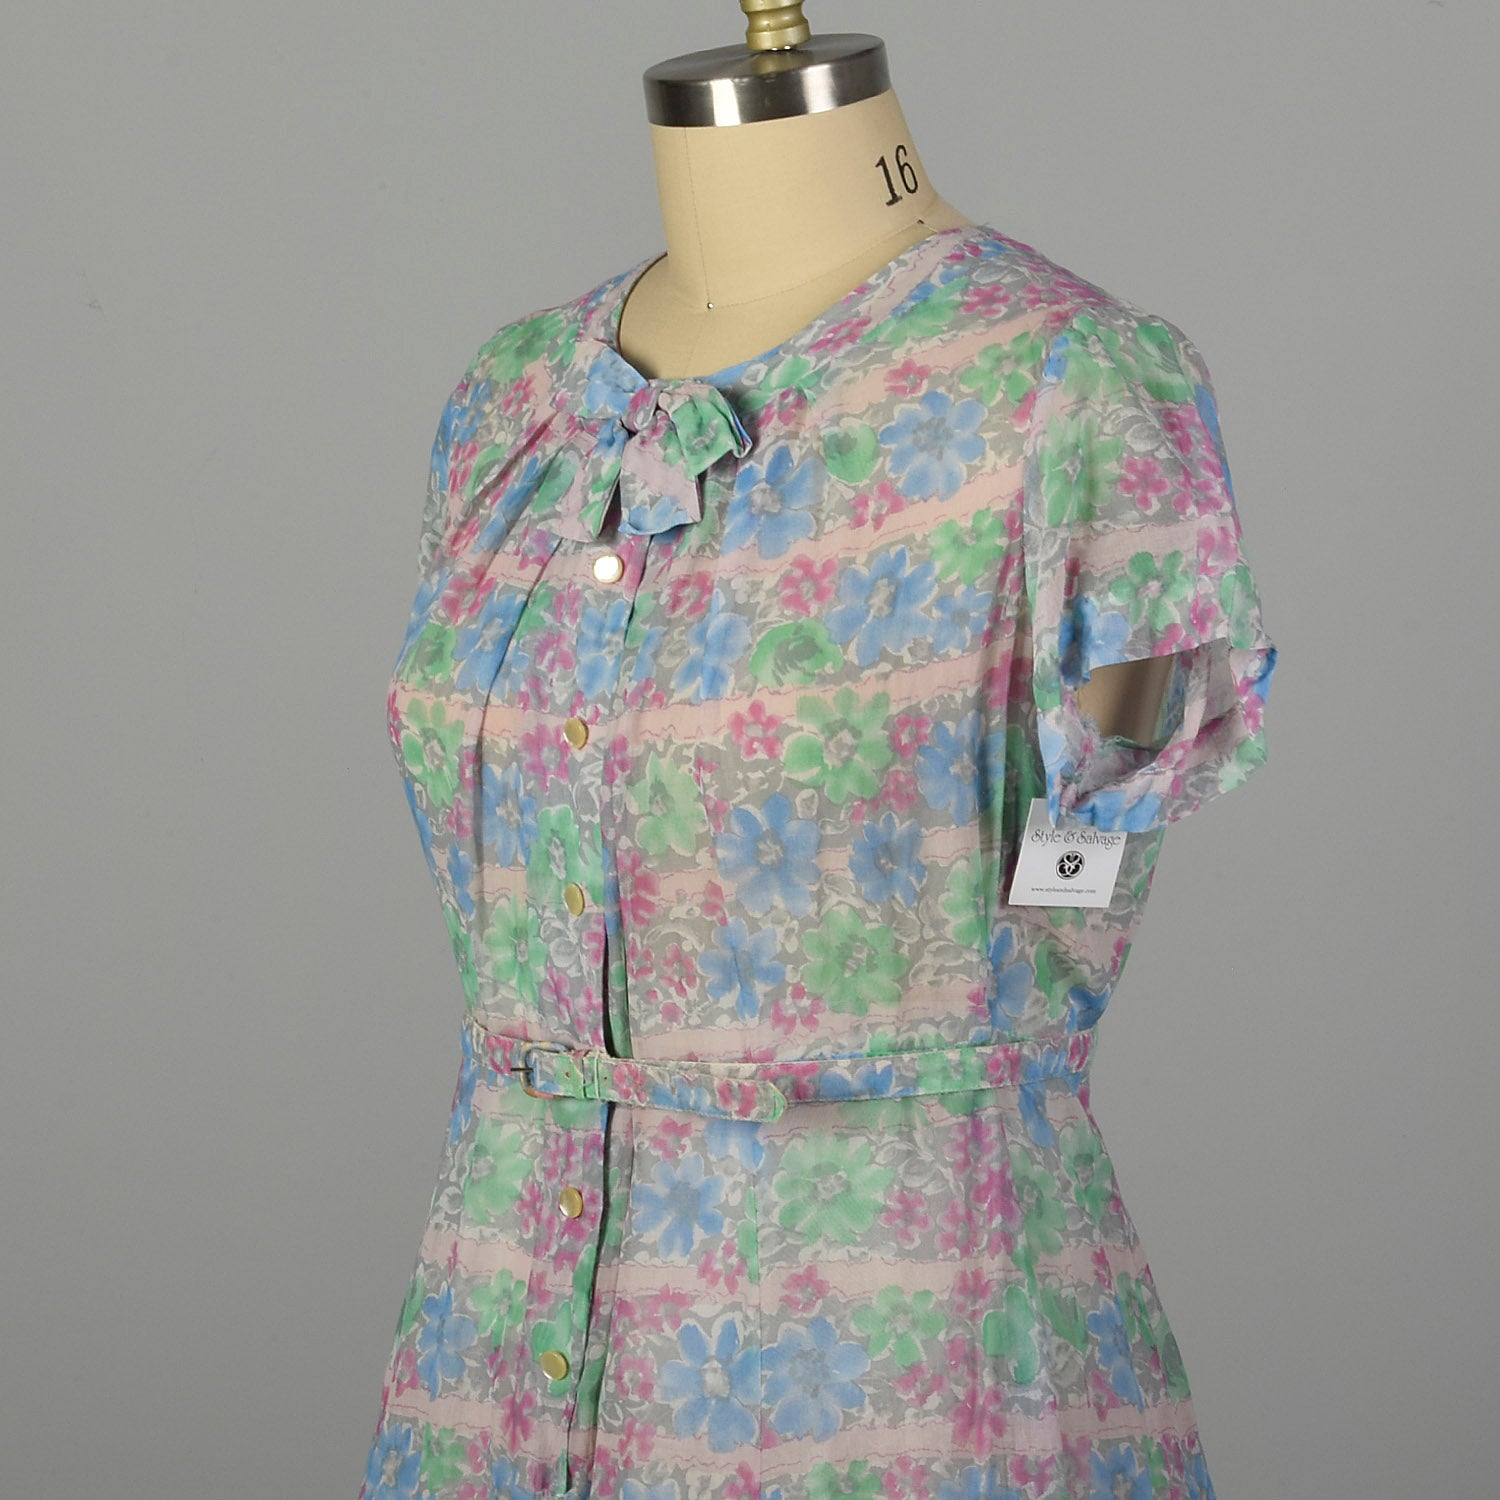 XXL 1950s Day Dress Lightweight Semi-Sheer Short Sleeve Floral Summer Casual